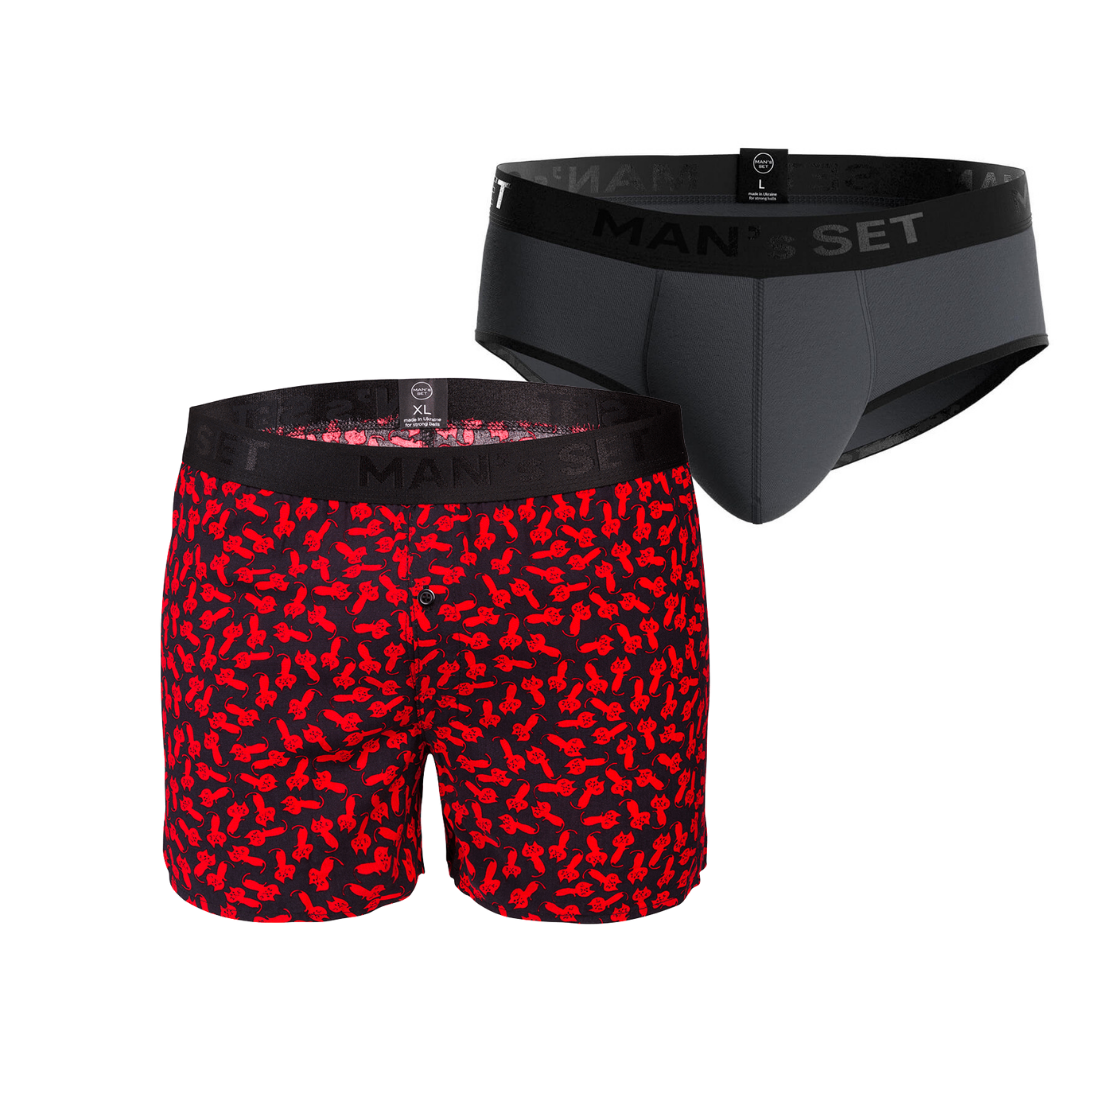 Комплект трусов MIX Briefs Shorts Black Series, 2шт MansSet